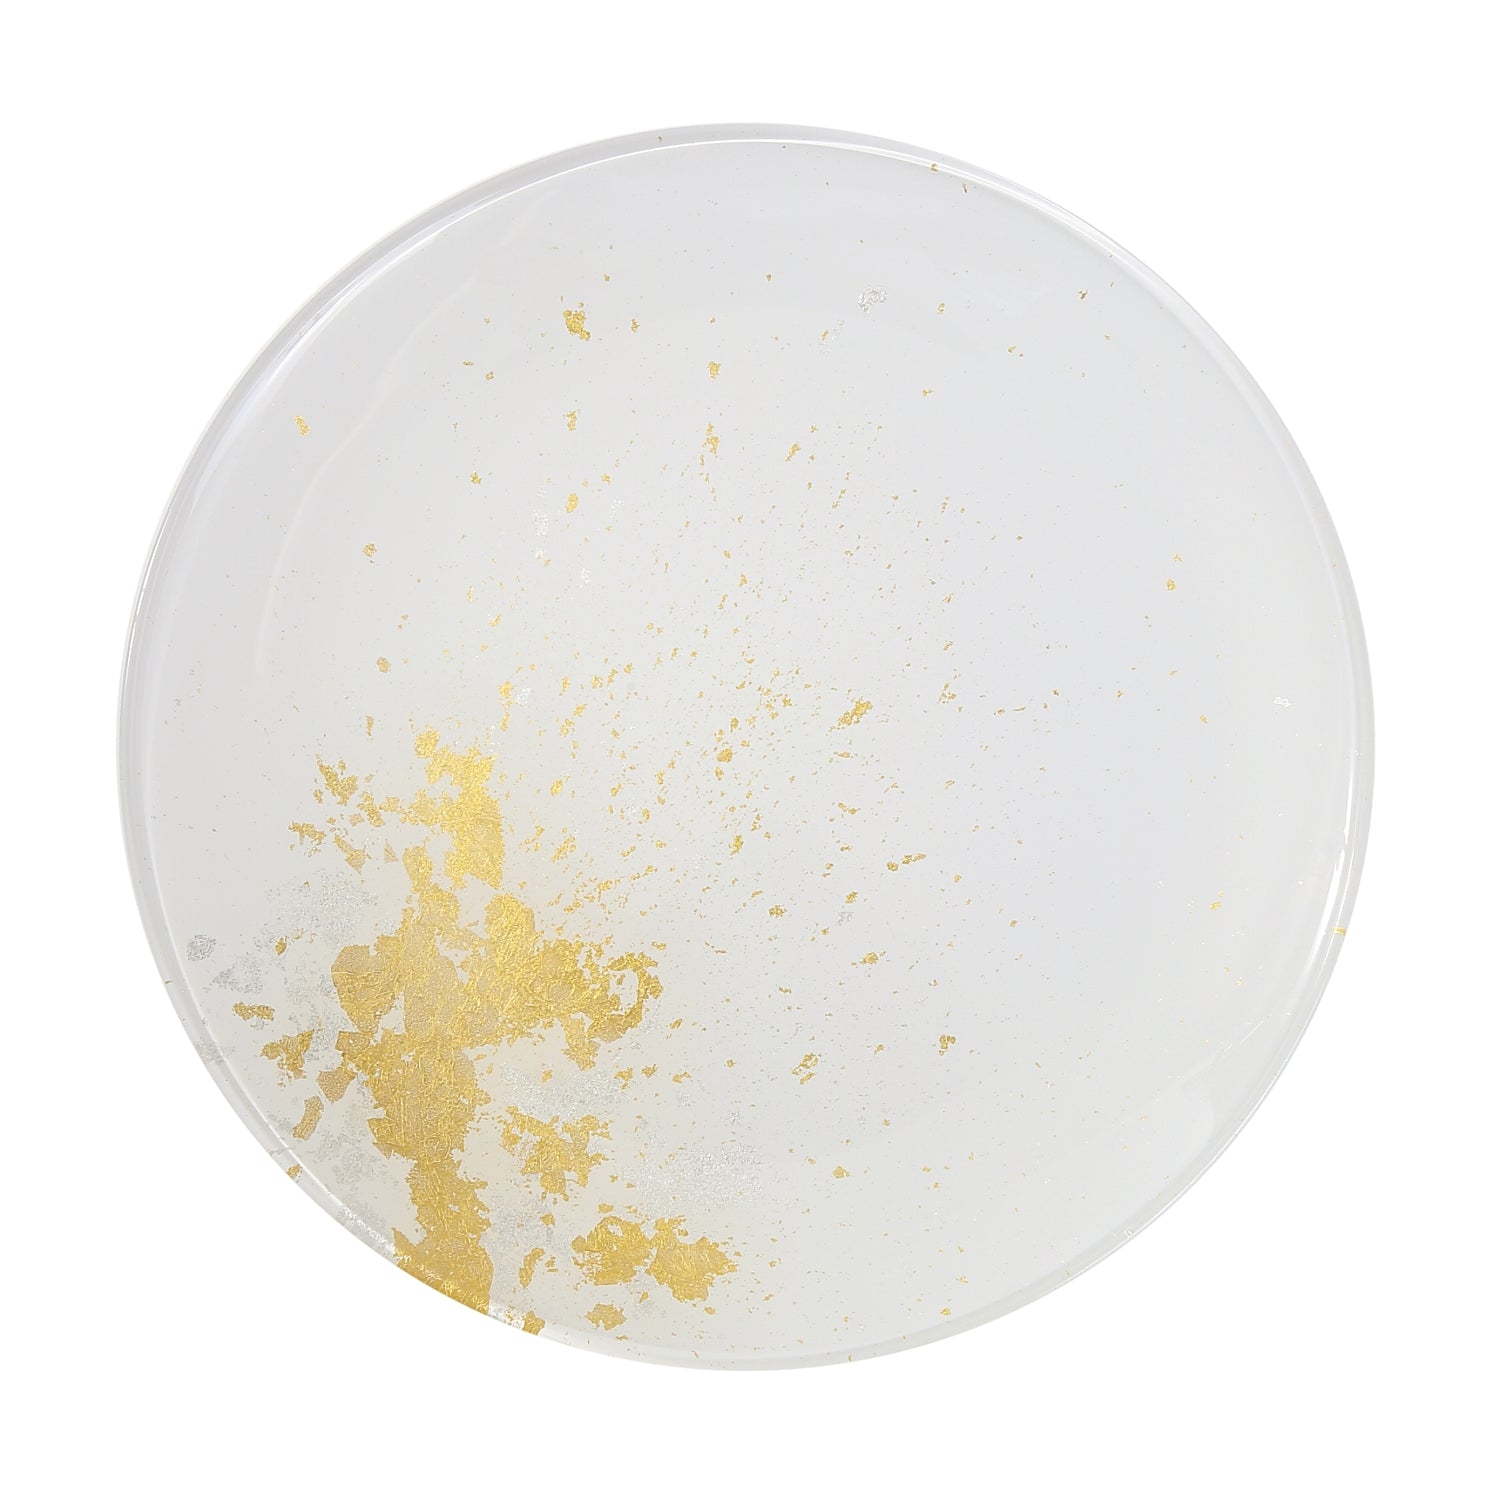 Syosaku Japanese Urushi Glass Flat Dinner Plate 11-inch (28cm) Pure White with Gold Leaf, Dishwasher Safe - Syosaku-Japan